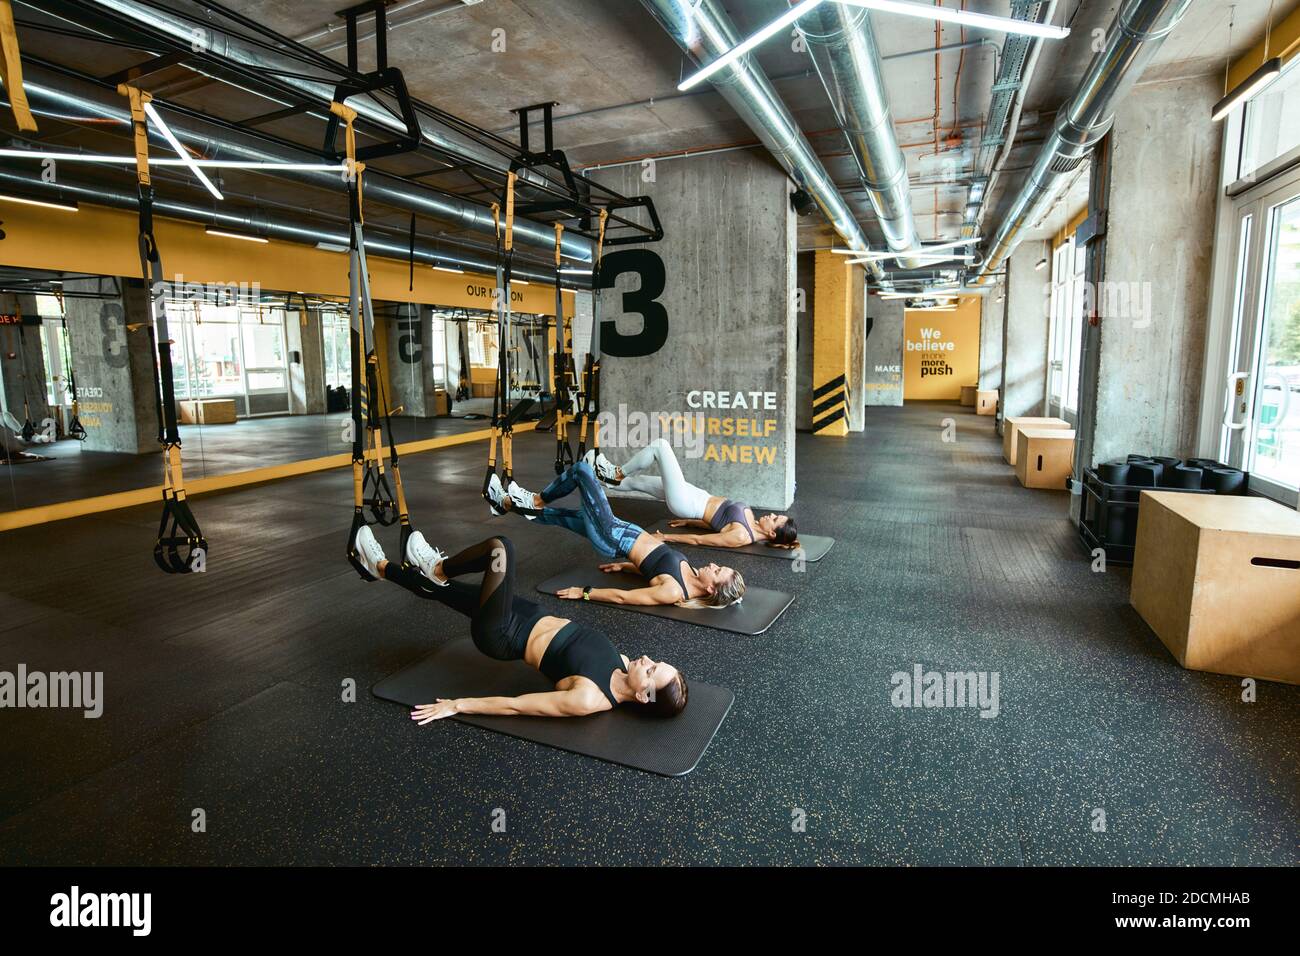 Krafttraining. Drei junge kaukasische Sportlerinnen in Sportbekleidung trainieren mit Fitness trx Straps im Industrial oder Crossfit Gym. Sport, Menschen arbeiten, Wellness und gesunde Lebensweise Stockfoto